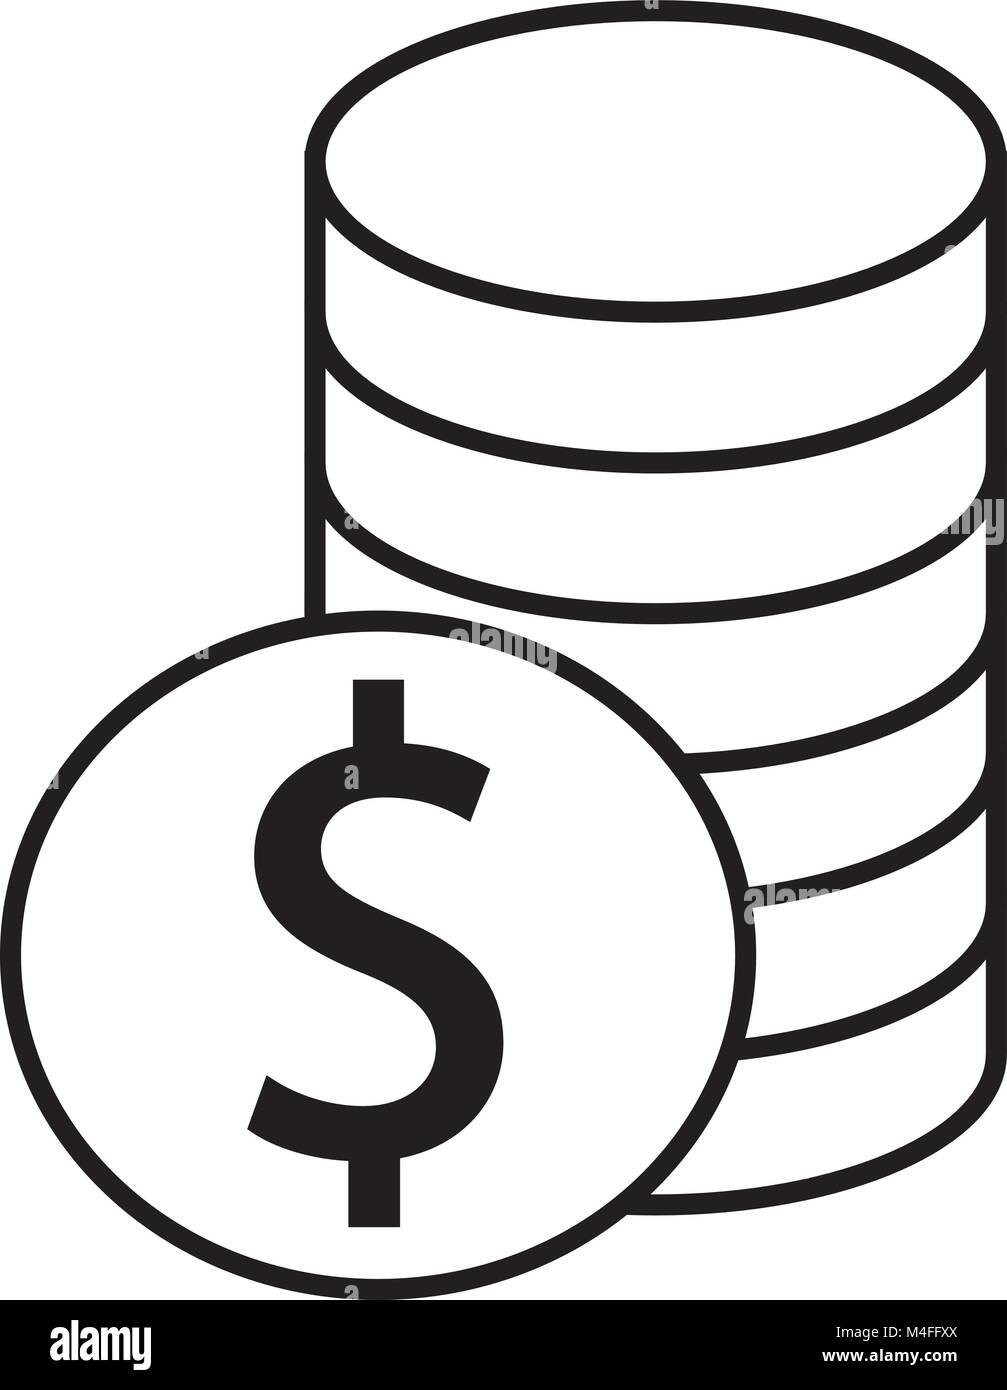 Dollar Währung Symbol oder Logo Vektor über einem Haufen von Münzen stapeln. Symbol für die Vereinigten Staaten von Amerika Bank, Banken oder Amerikanischen Finanzen. Stock Vektor